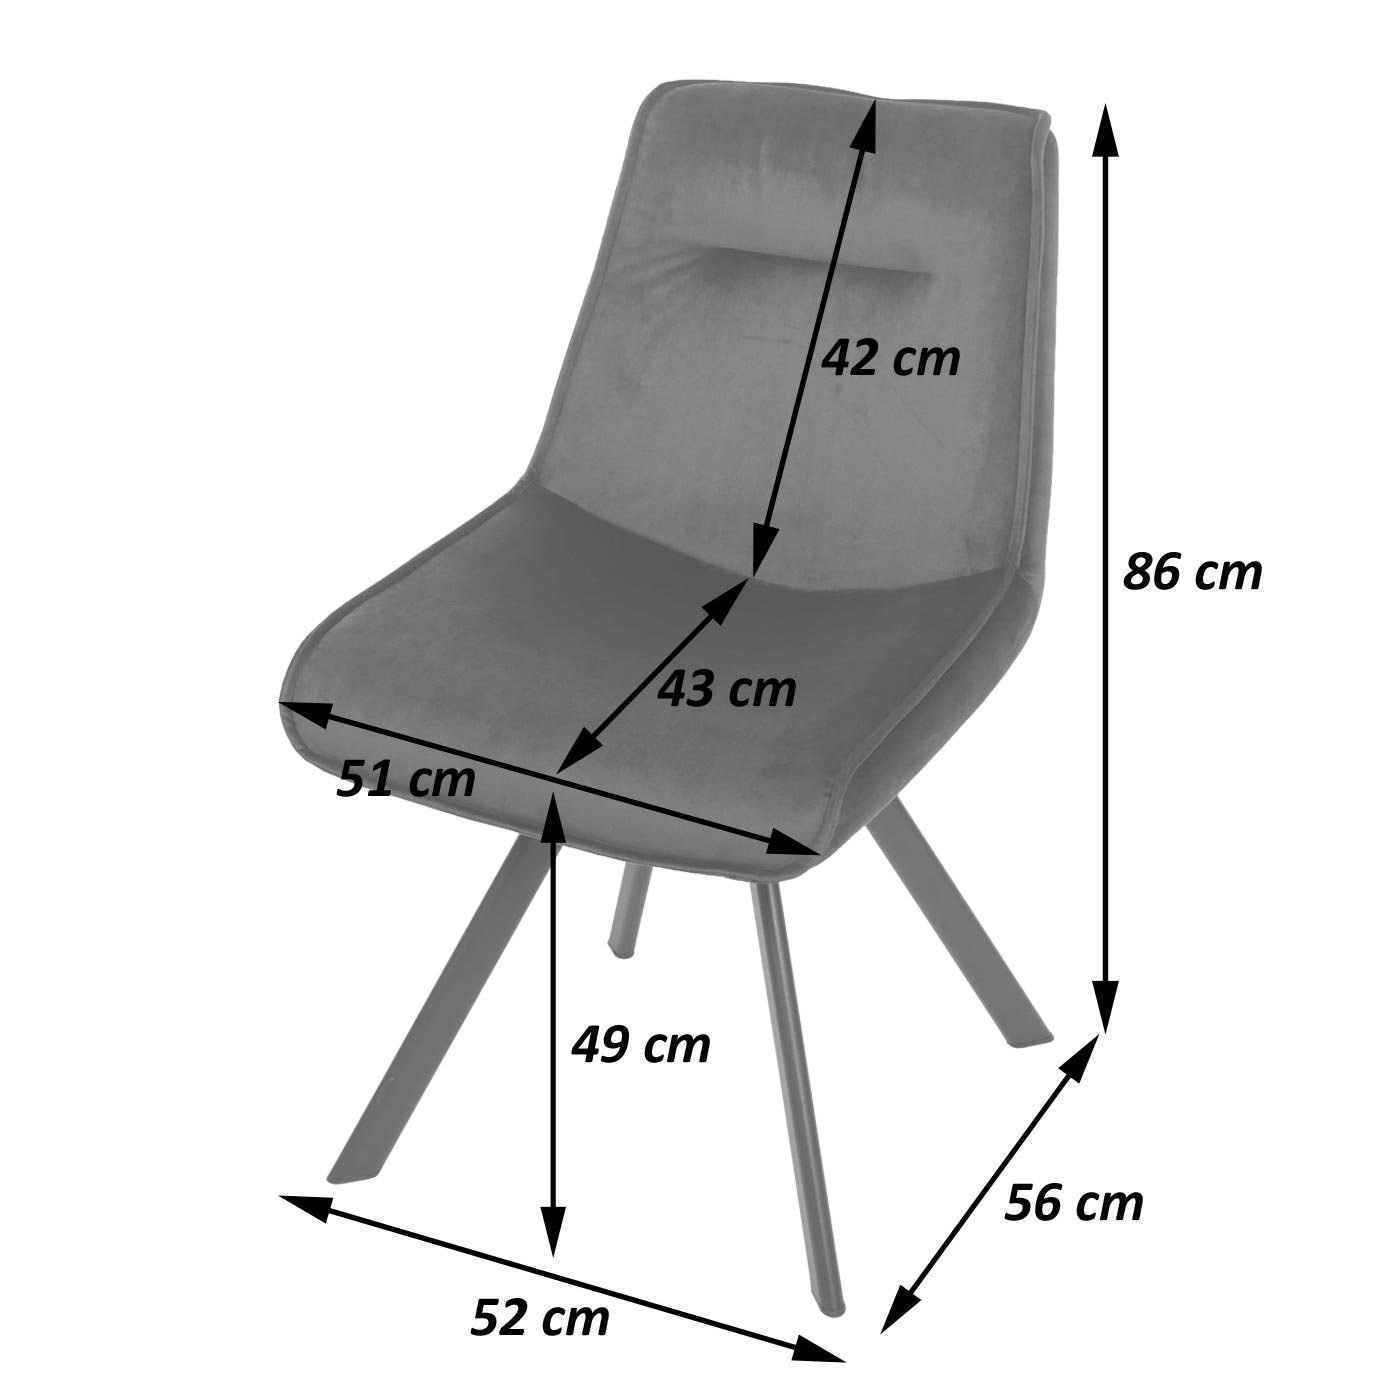 MCW-K24-6 Sitzfläche Stativgestell, Weiche Stabiles 9cm-Polsterdicke durch MCW (6er-Set), Esszimmerstuhl